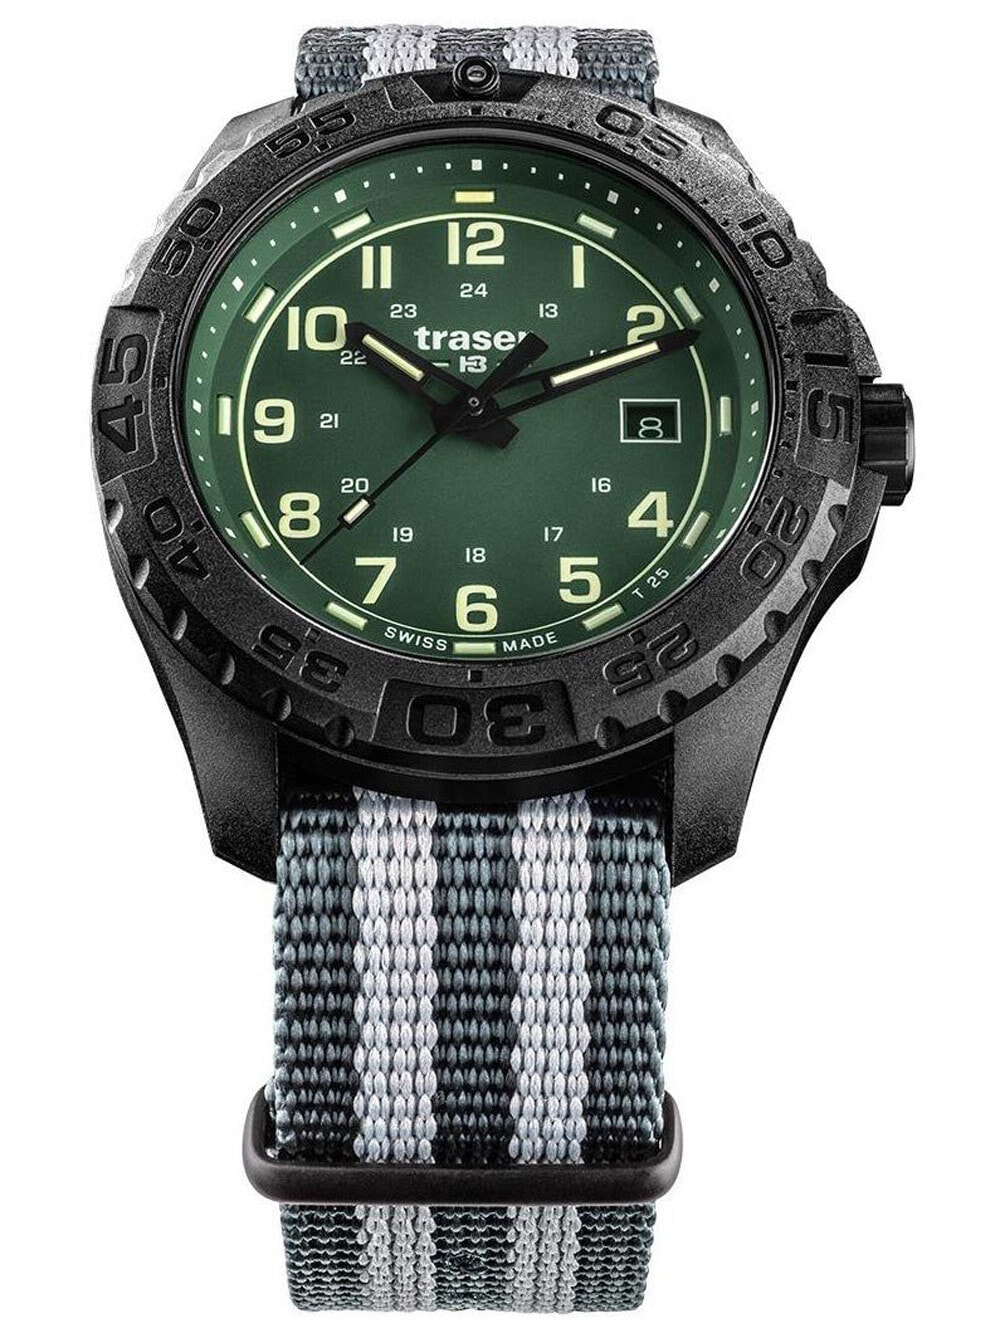 Мужские наручные часы с серым текстильным ремешком Traser H3 109039 P96 OdP Evolution green Mens 44mm 20ATM